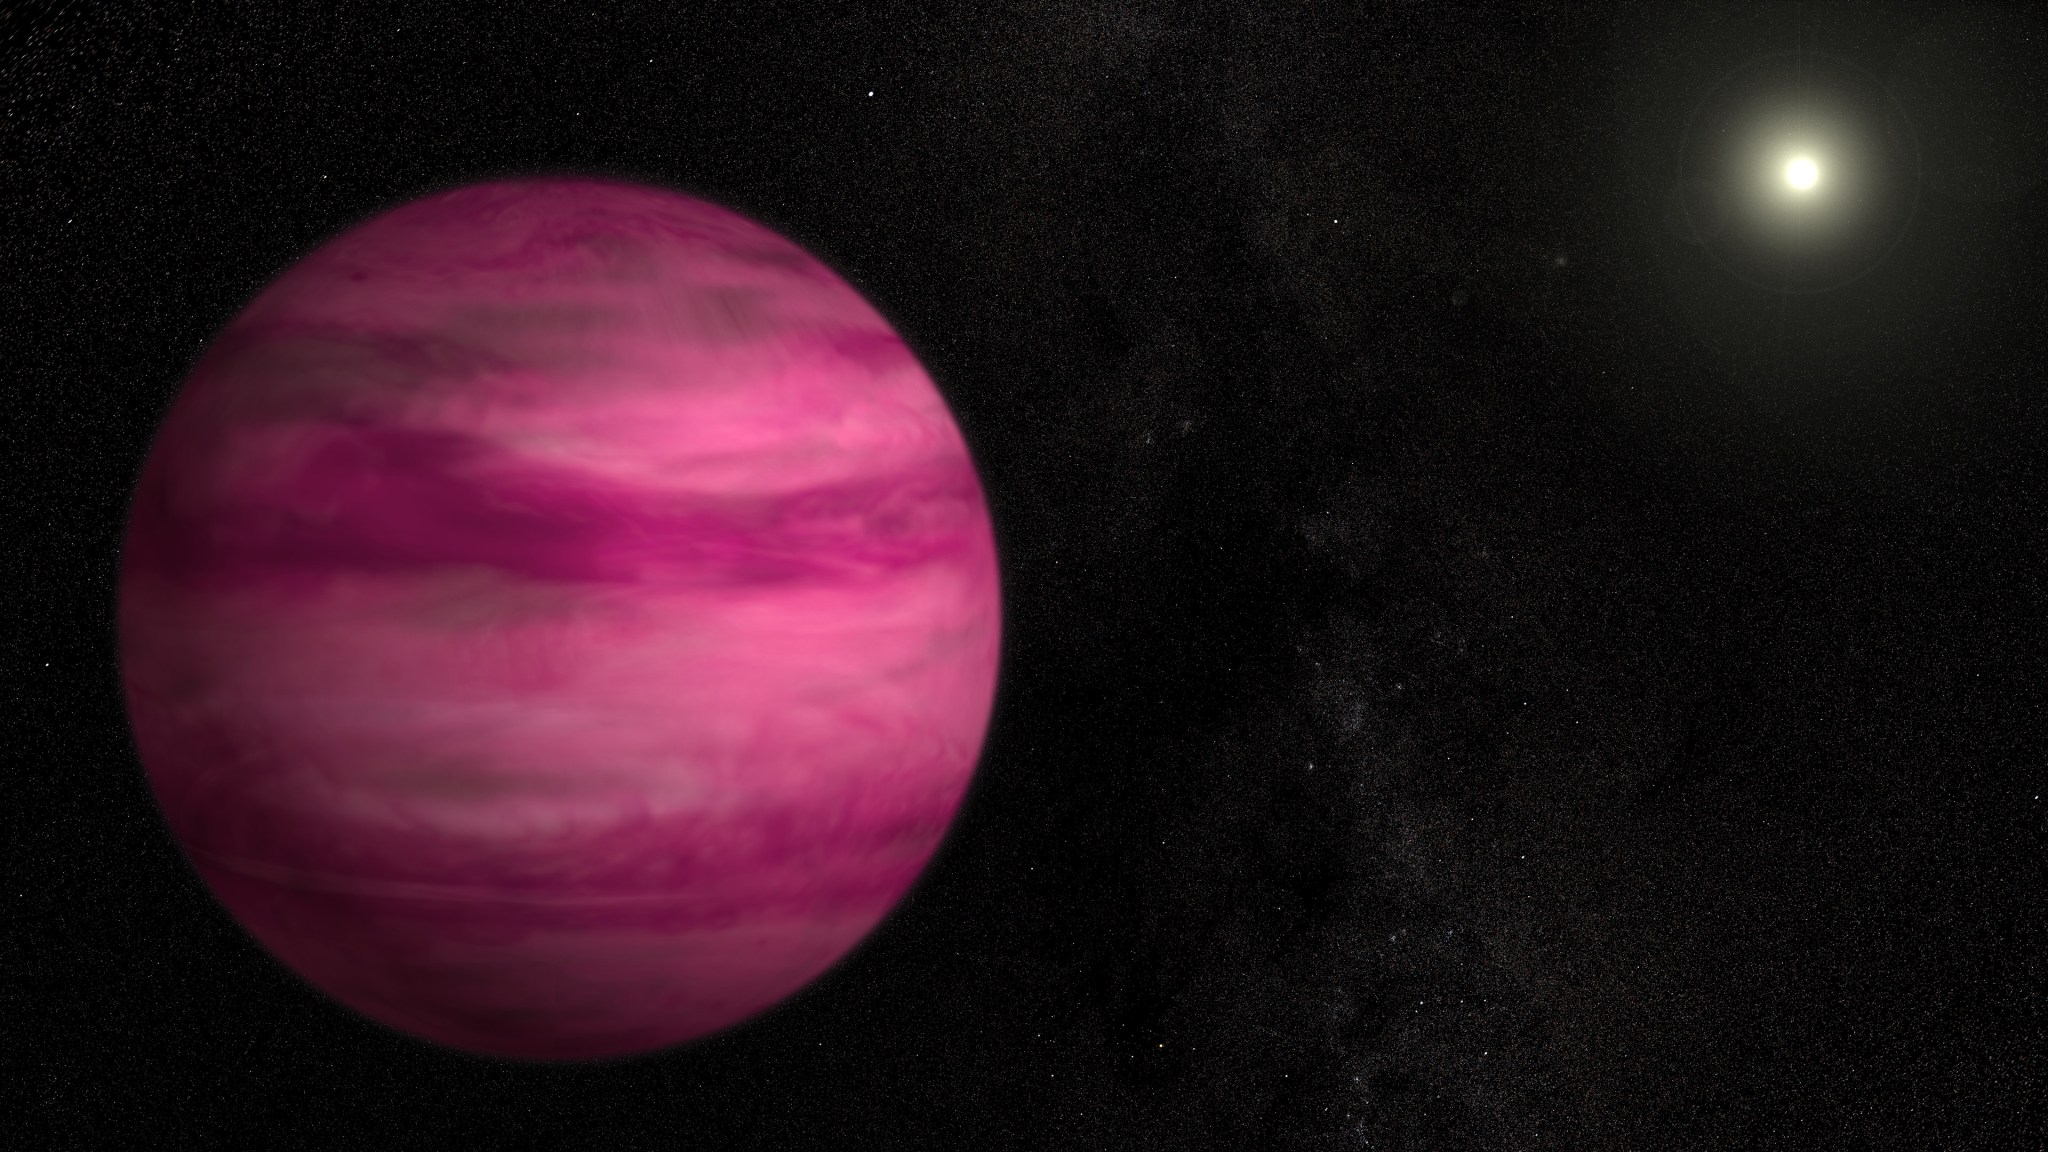 Illustration of planet GJ 504 b